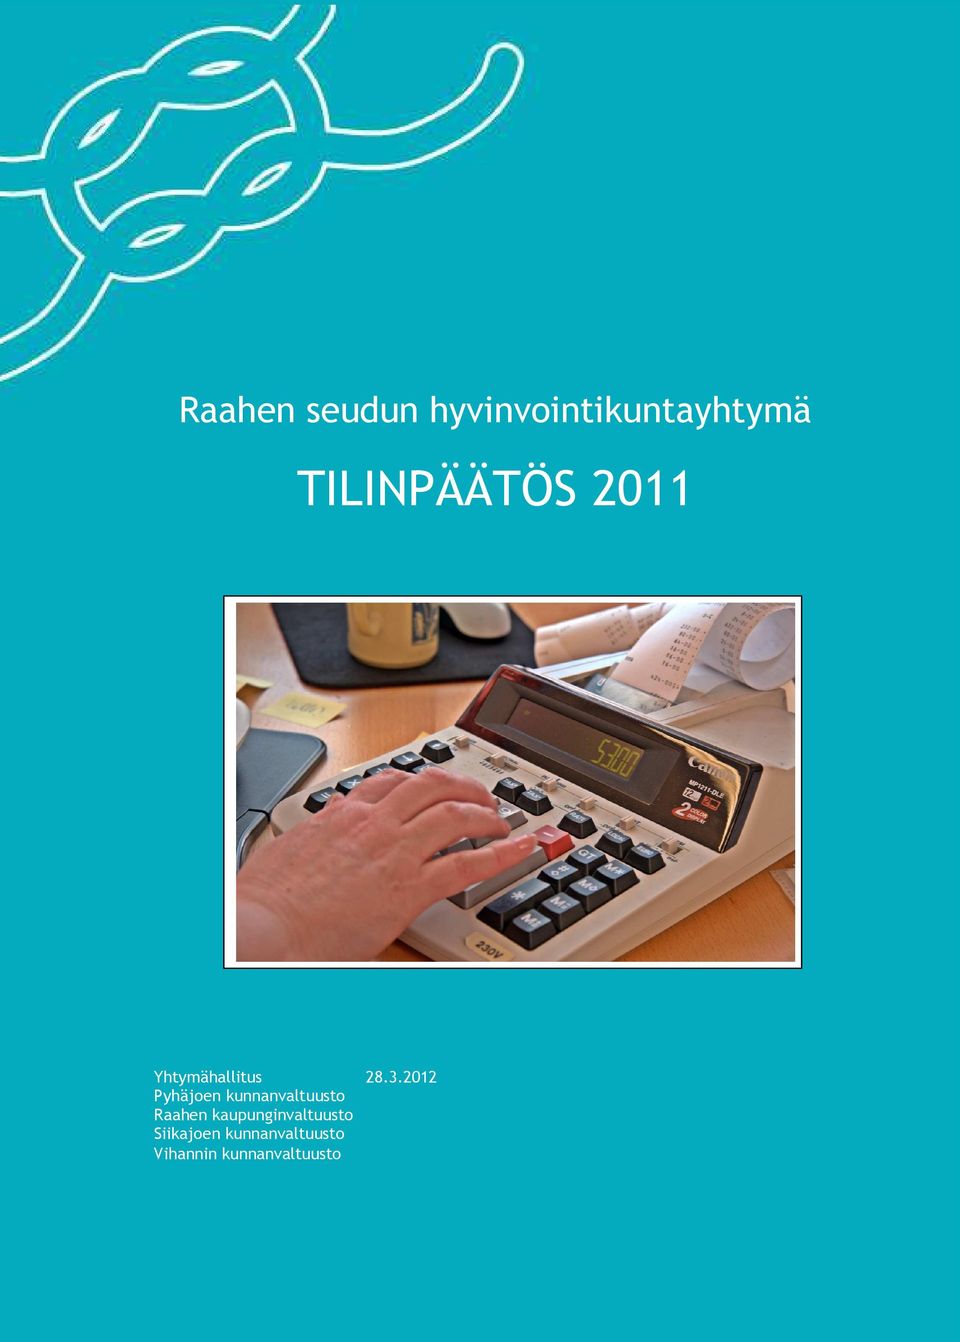 2012 Pyhäjoen kunnanvaltuusto Raahen